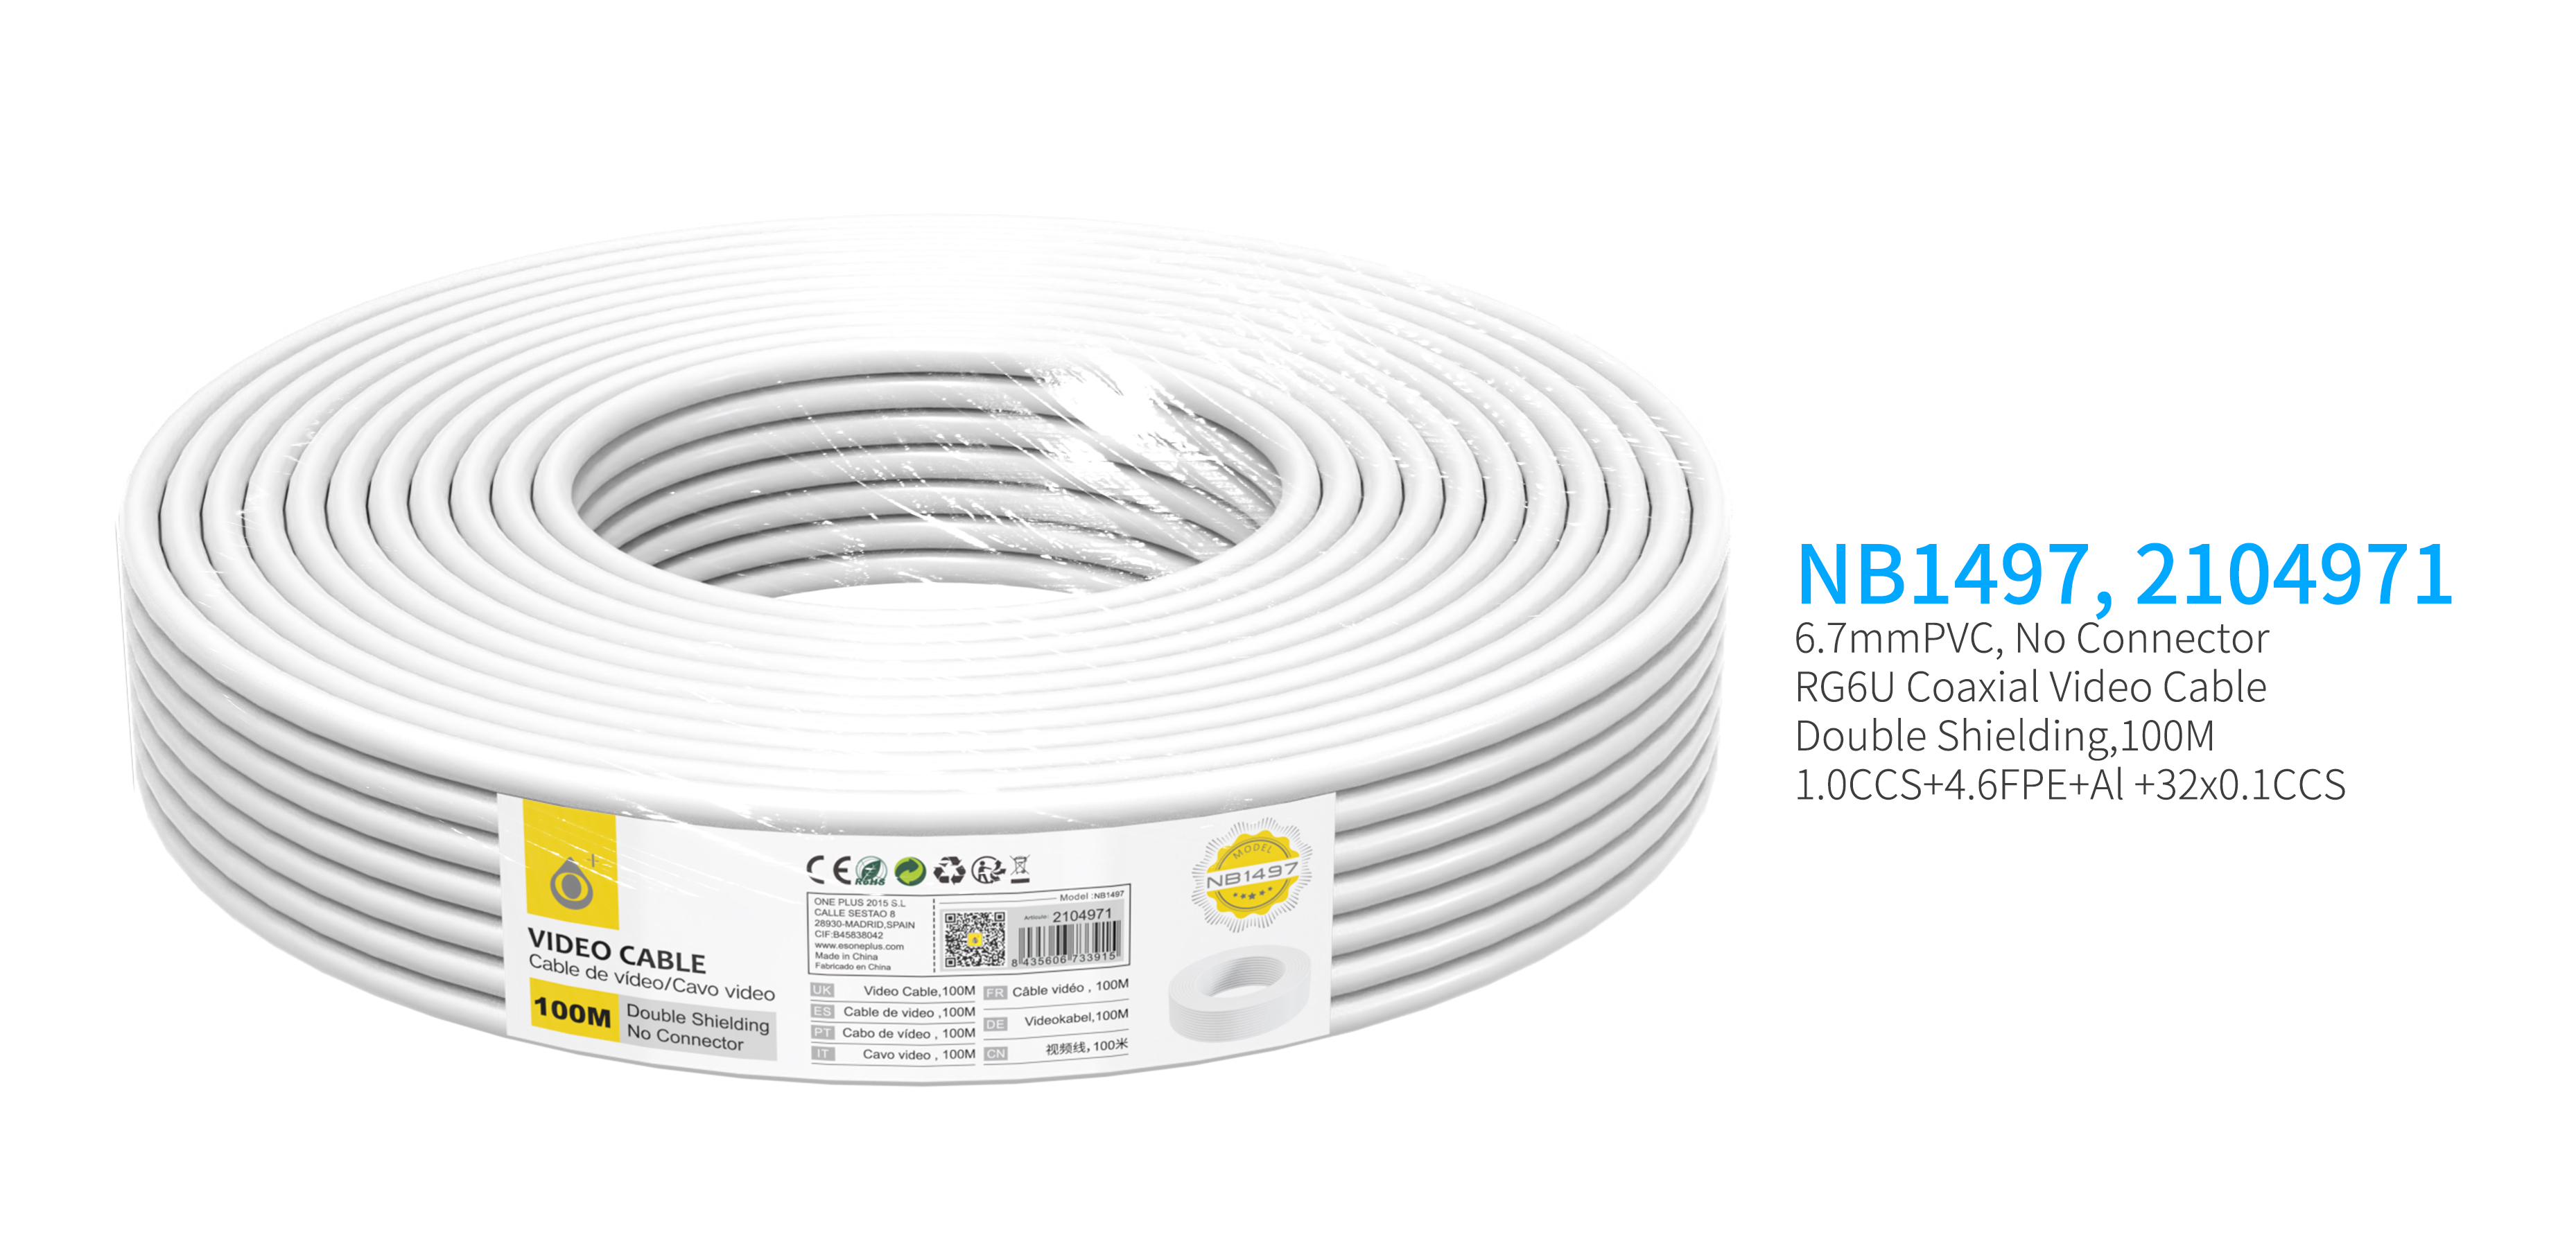 NB1497  Cable de Video(Coaxial RG6U) Sin Conector, doble blindaje, 100 Metro, Blanco